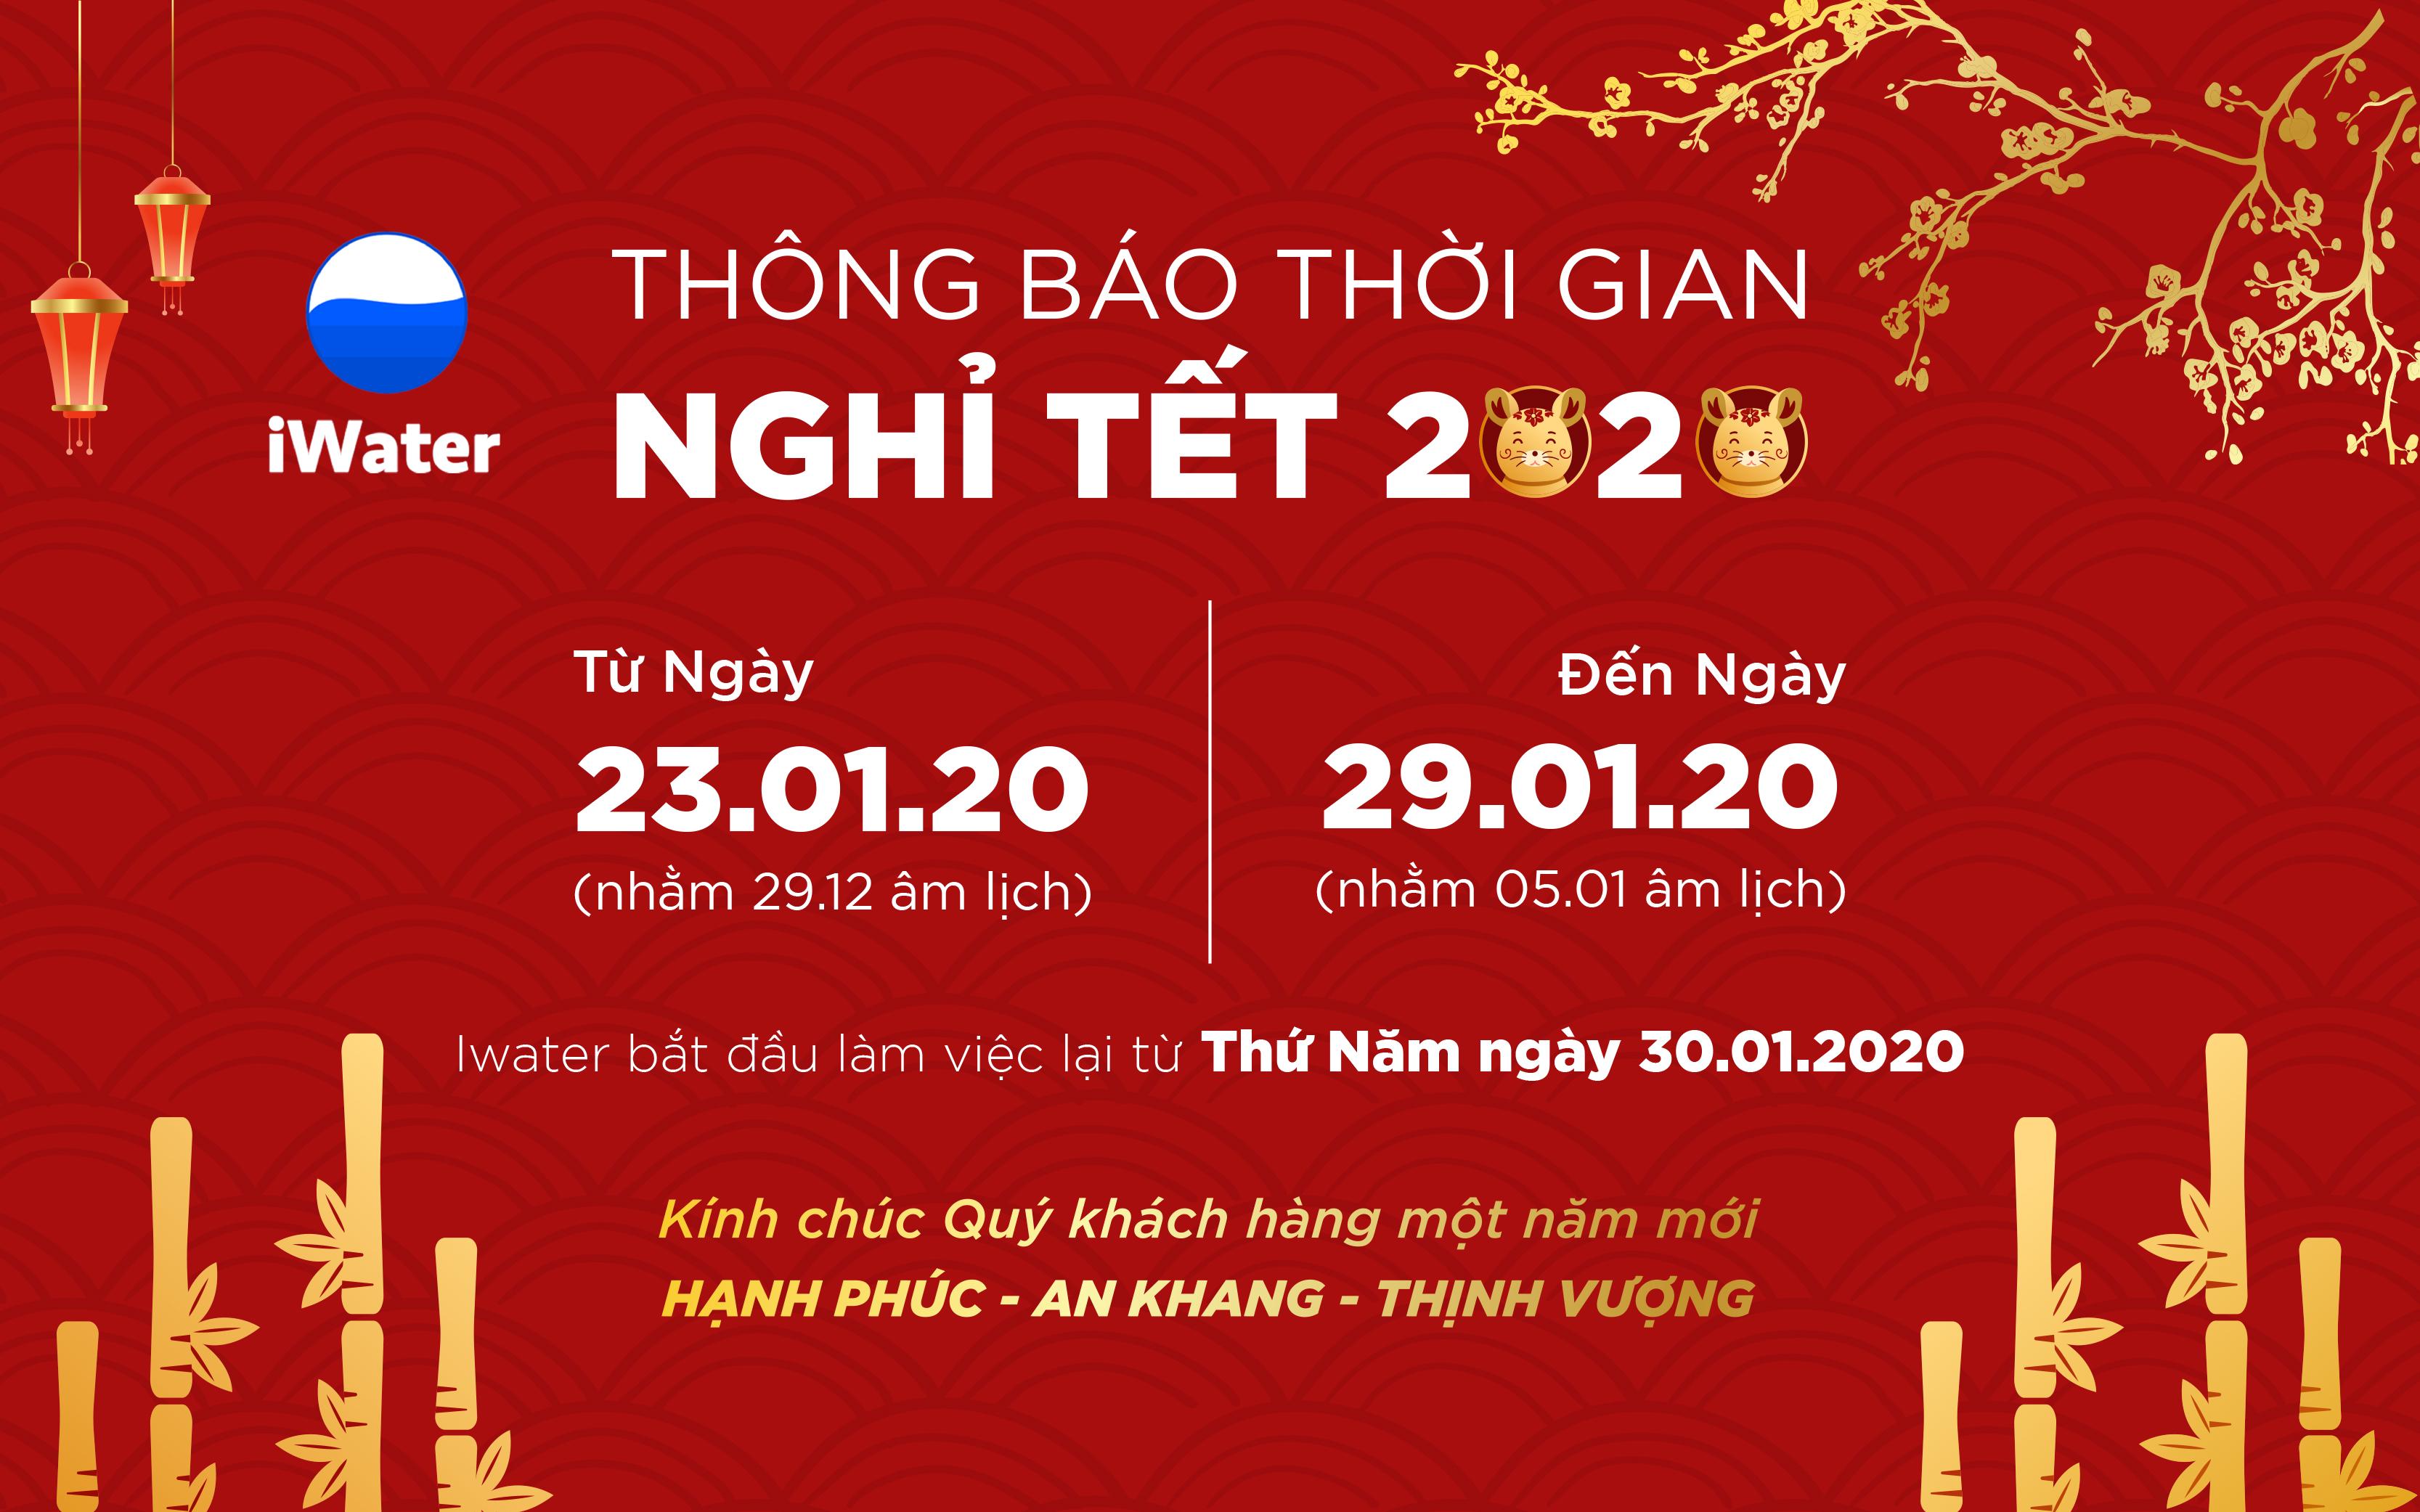 Công ty TNHH iWater xin trân trọng thông báo lịch nghỉ tết Nguyên Đán 2020